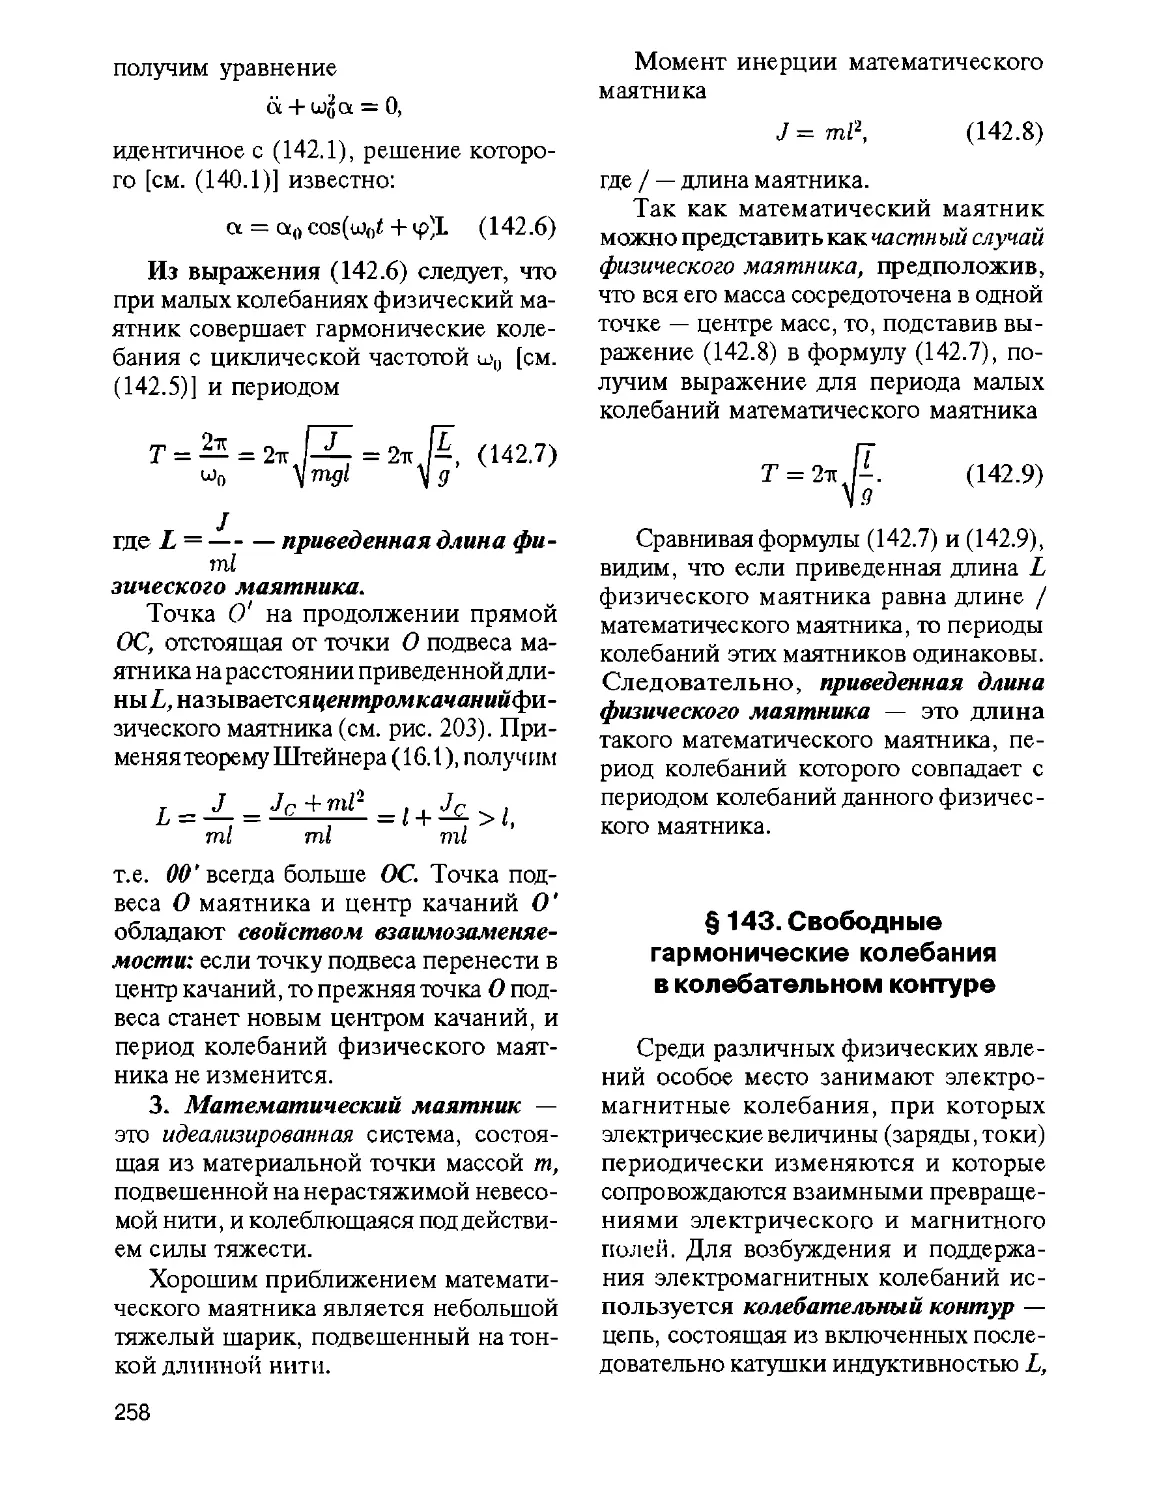 § 143. Свободные гармонические колебания в колебательном контуре